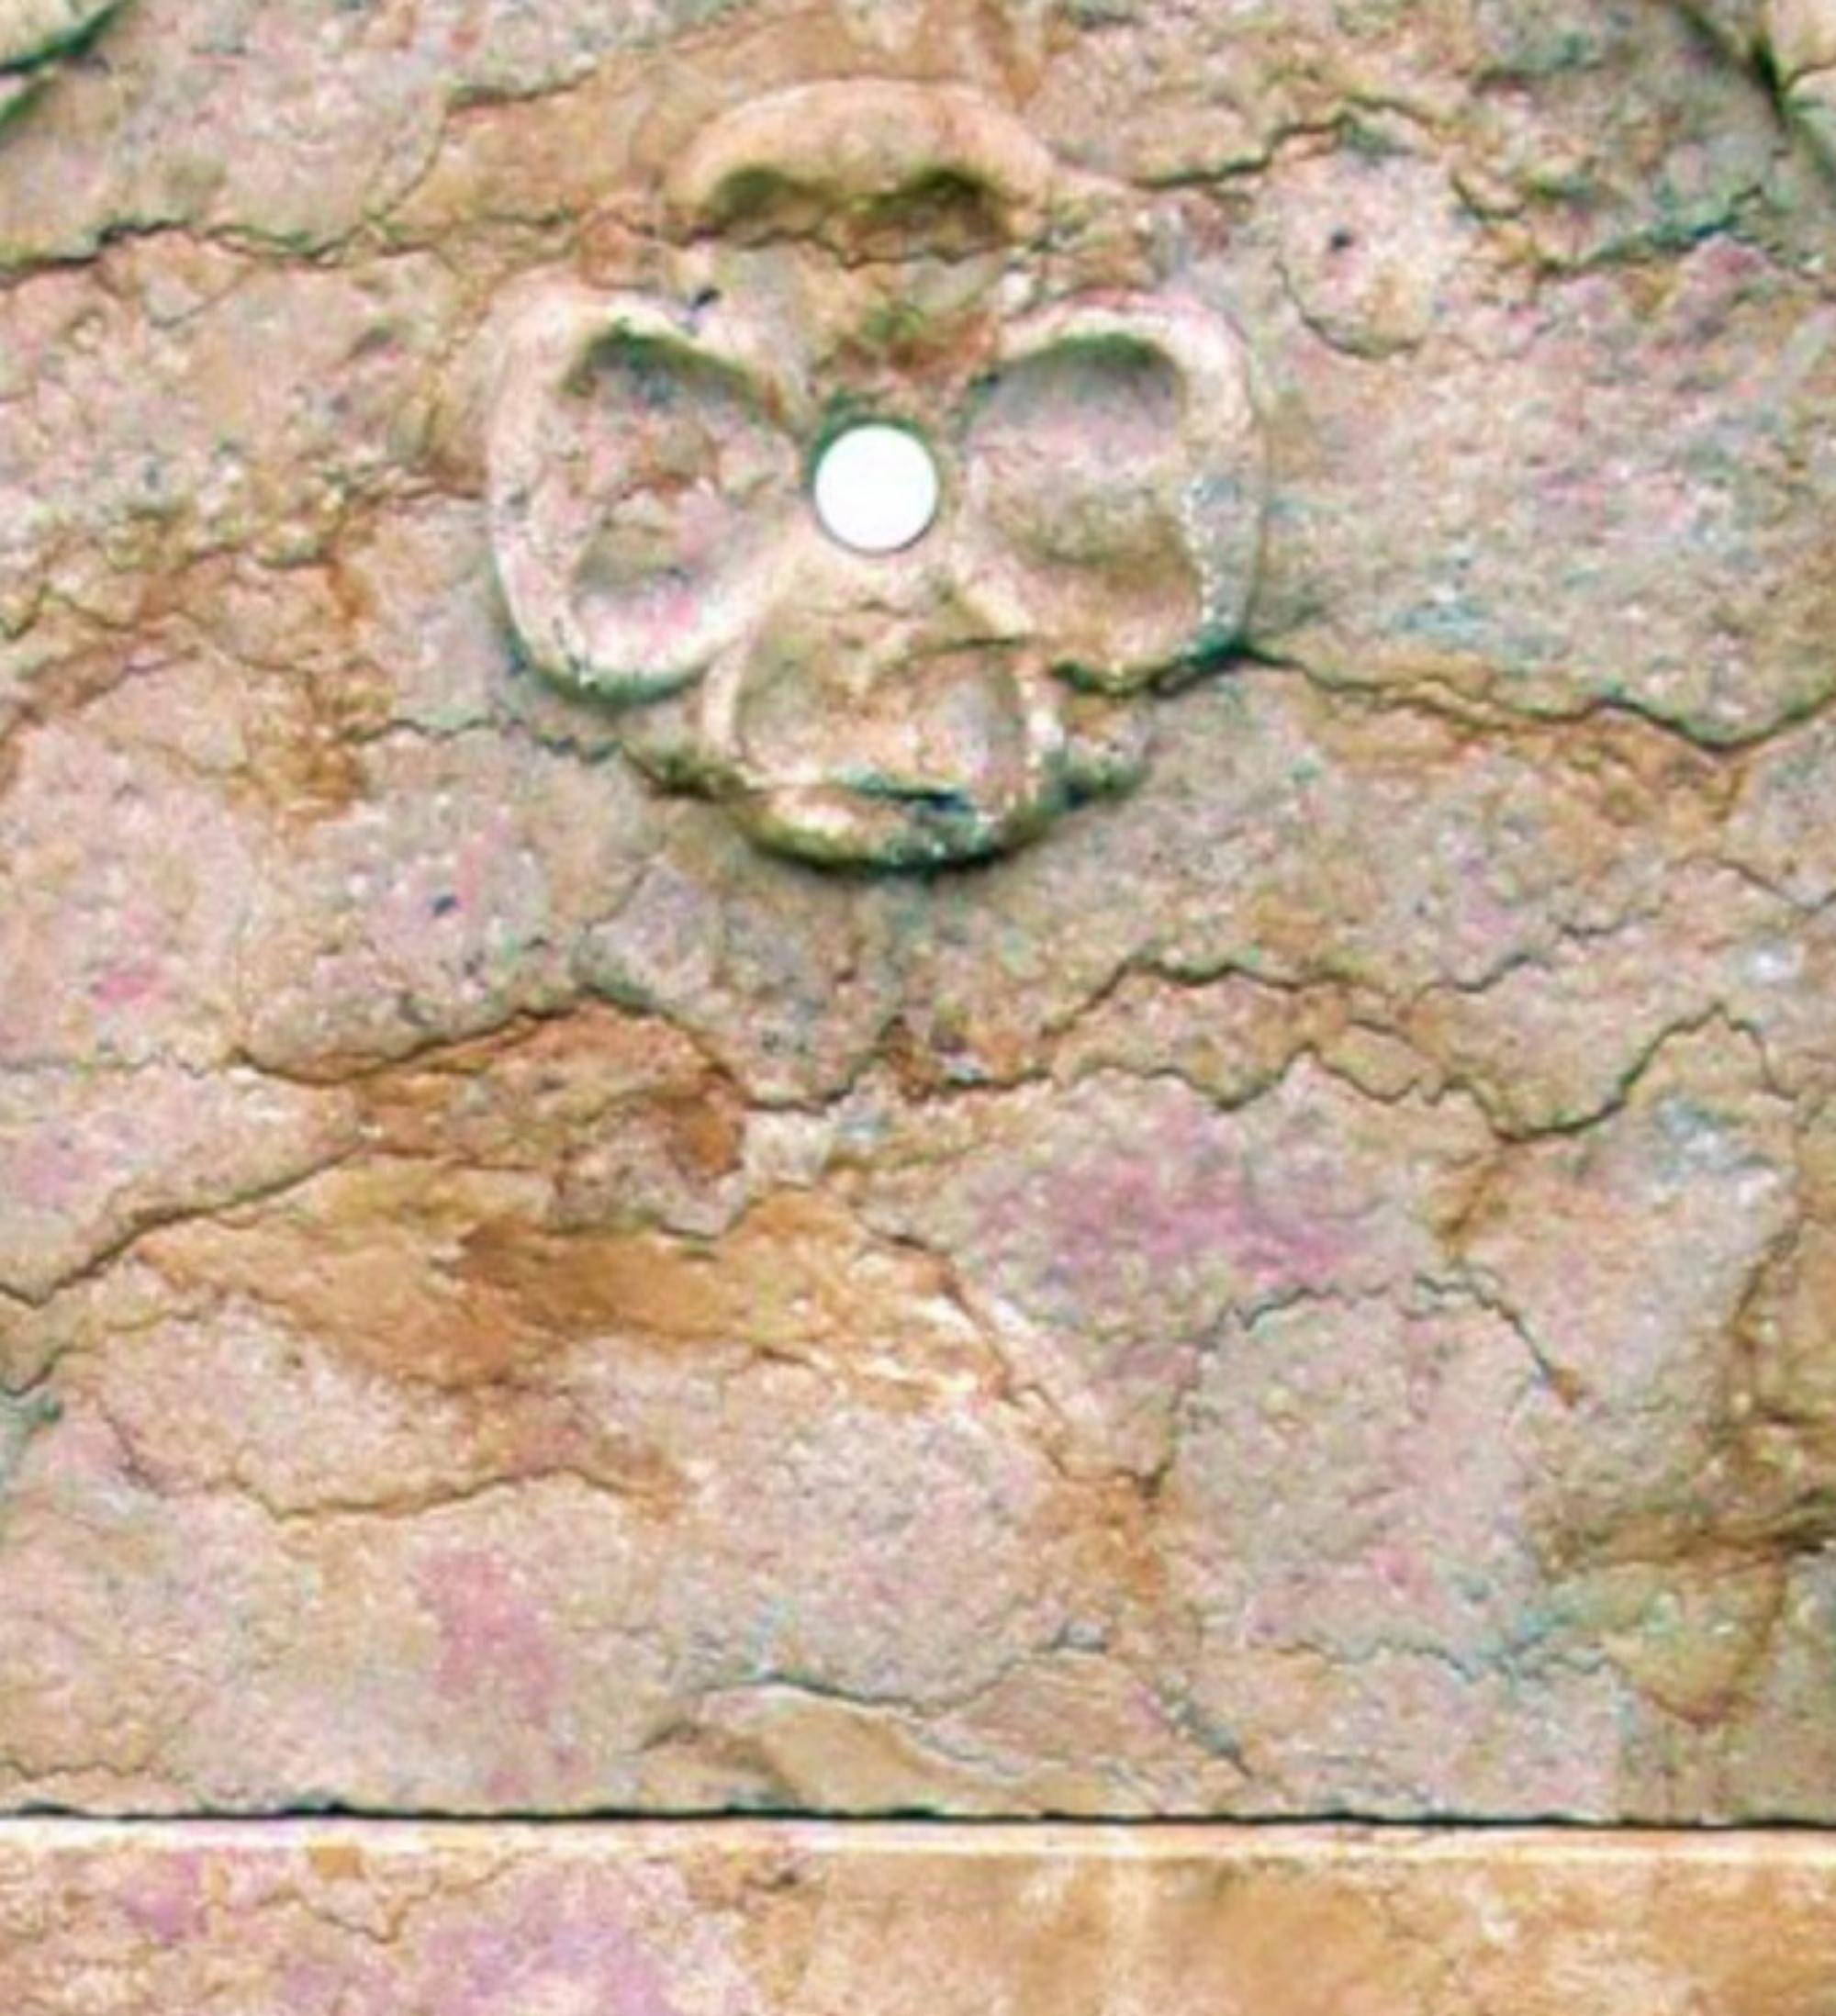 FONTAINE ROYALE EN MARBRE JAUNE - DEUX LIONS Début du 20e siècle
Bassin à double tête de lion de forme semi-octogonale et tablette sculptée pour l'écoulement des eaux.
HAUTEUR 77cm
LARGEUR 52cm
PROFONDEUR 41cm
POIDS 50Kg
MATERIAL Marbre jaune